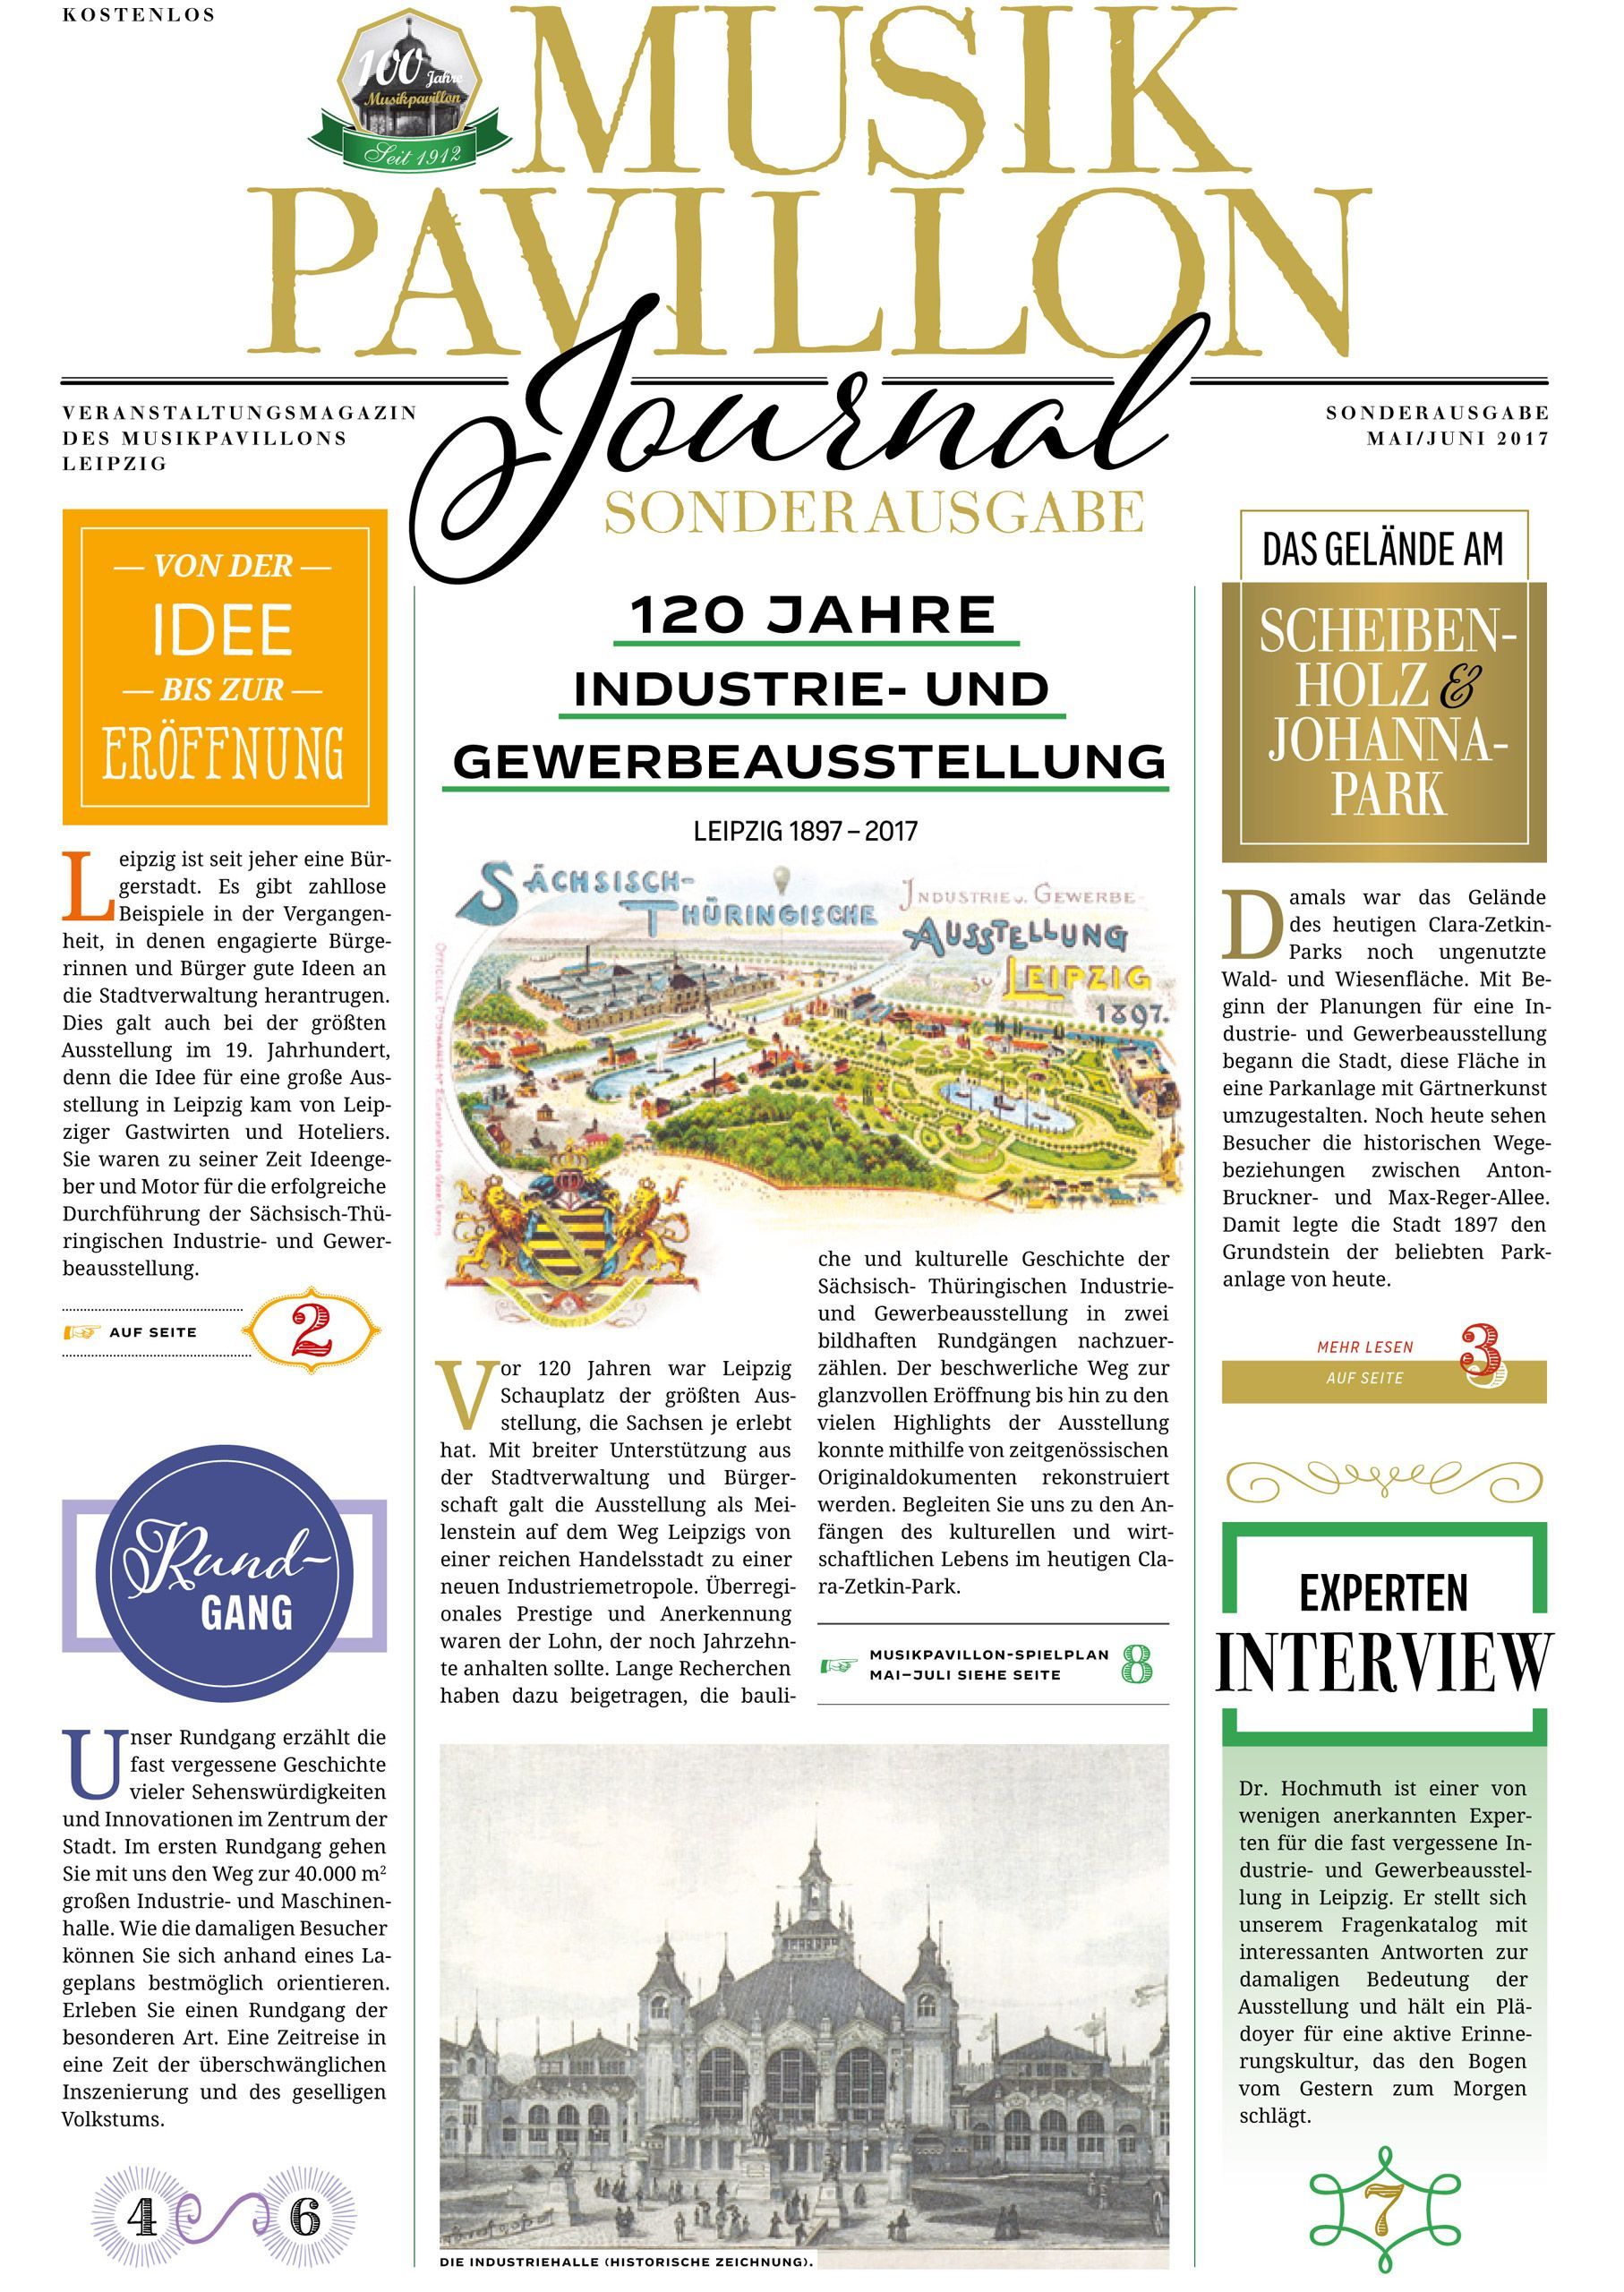 Titelseite „120 Jahre Industrie- und Gewerbeausstellung“ des Musikpavillon Journal Sonderausgabe Mai/Juni 2017